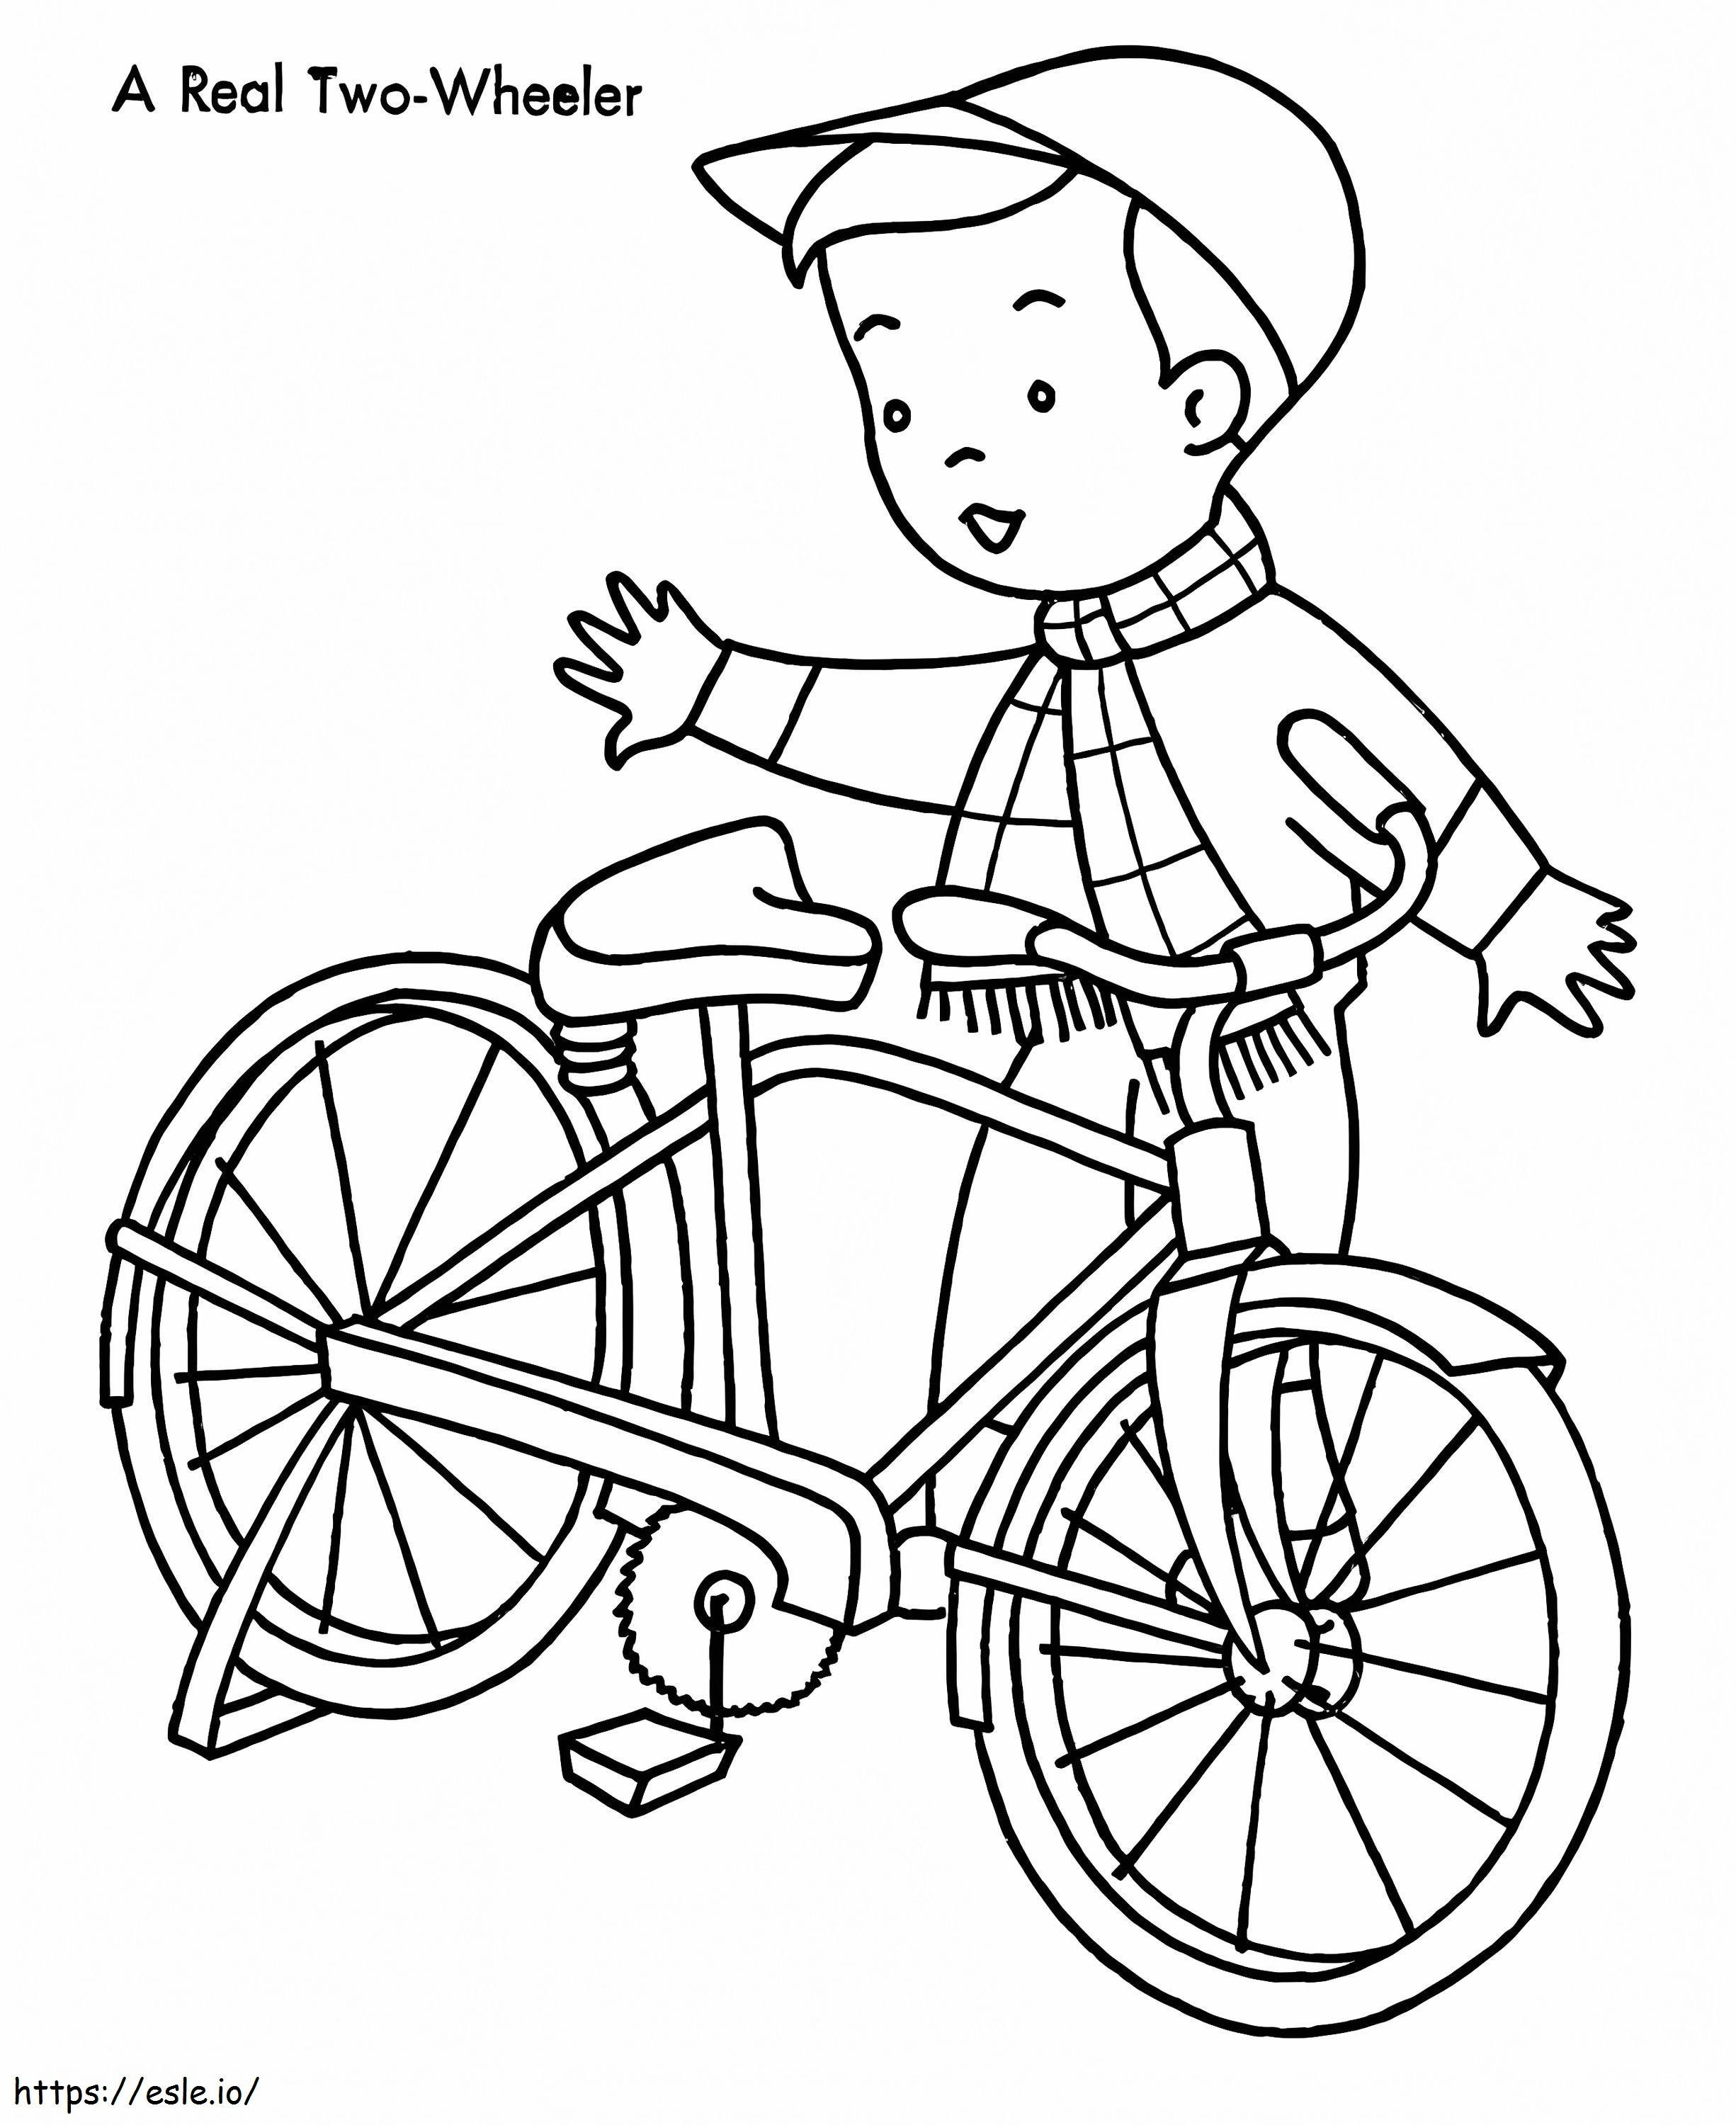 Çocuk ve Bisikleti boyama